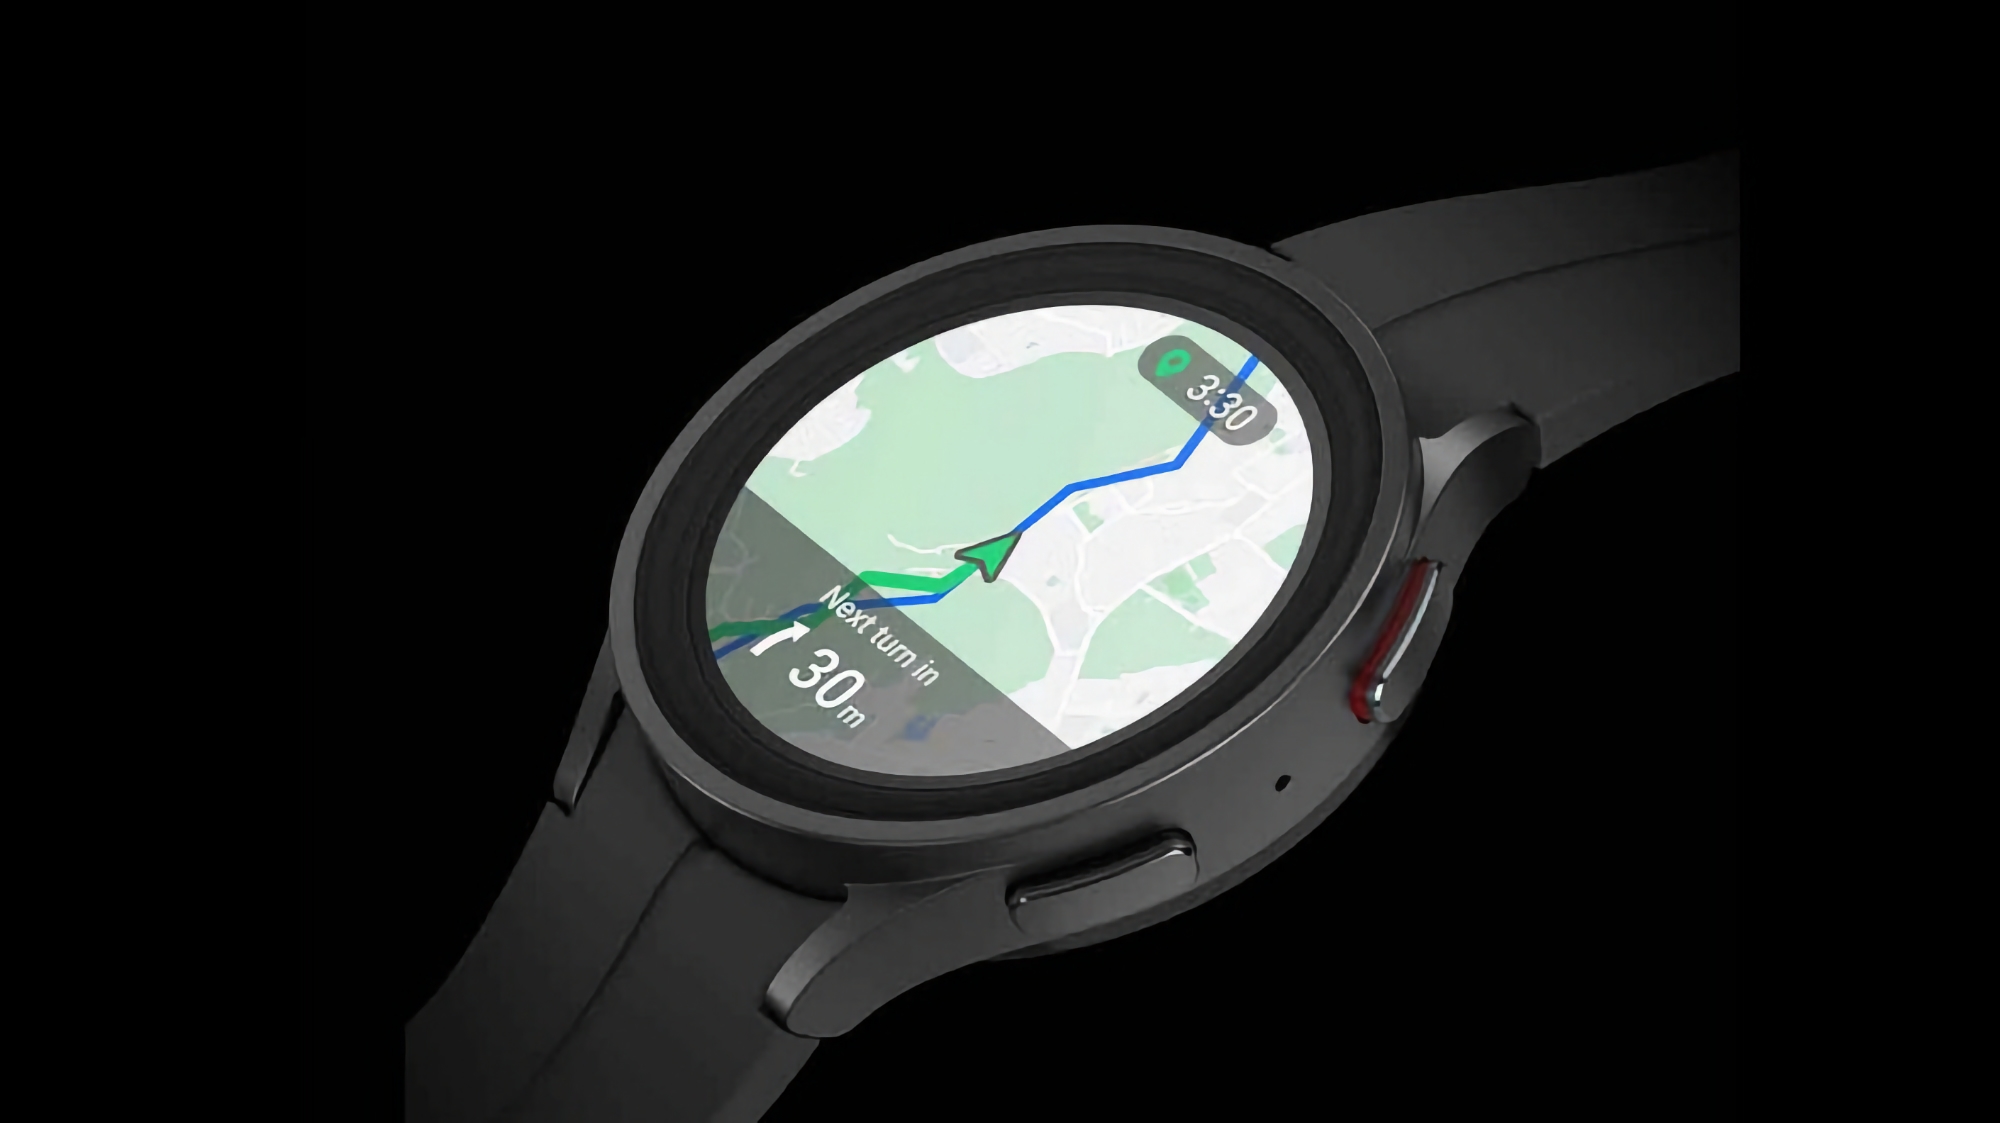 Mapy Google na smartwatchach z Wear OS 3 zyskują wsparcie dla wyświetlacza Always-on